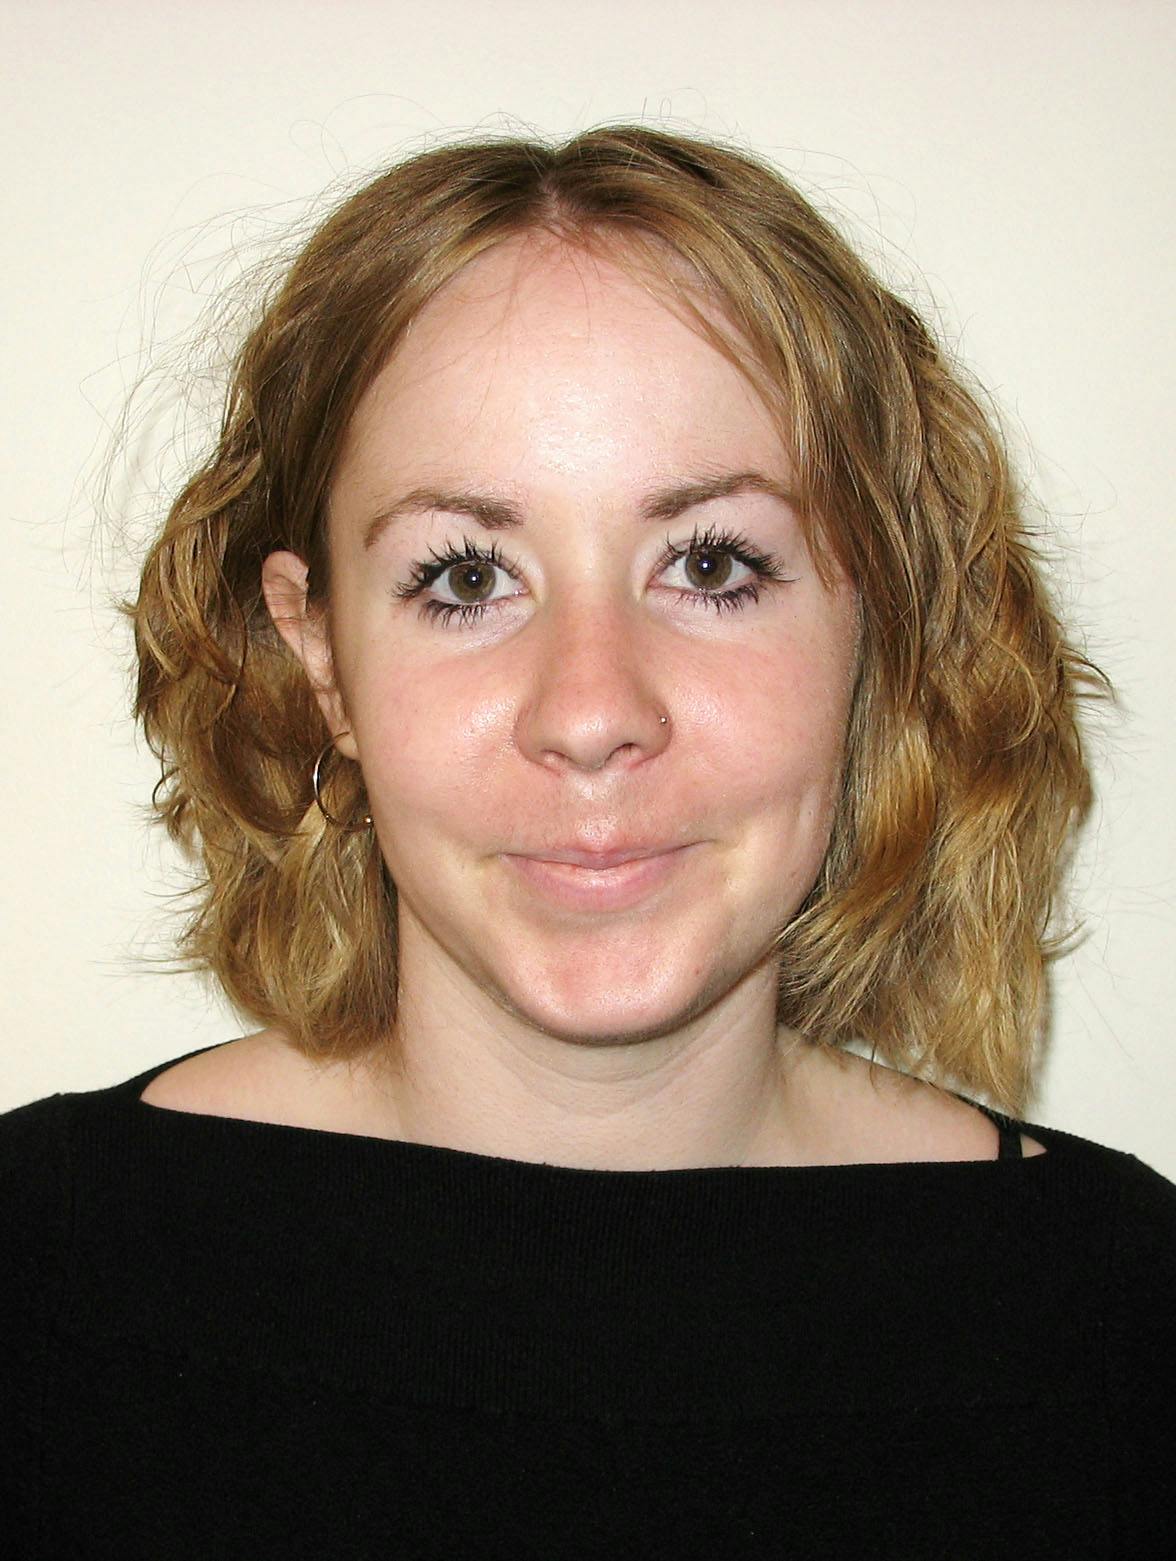 Team member, Karen MacLeod